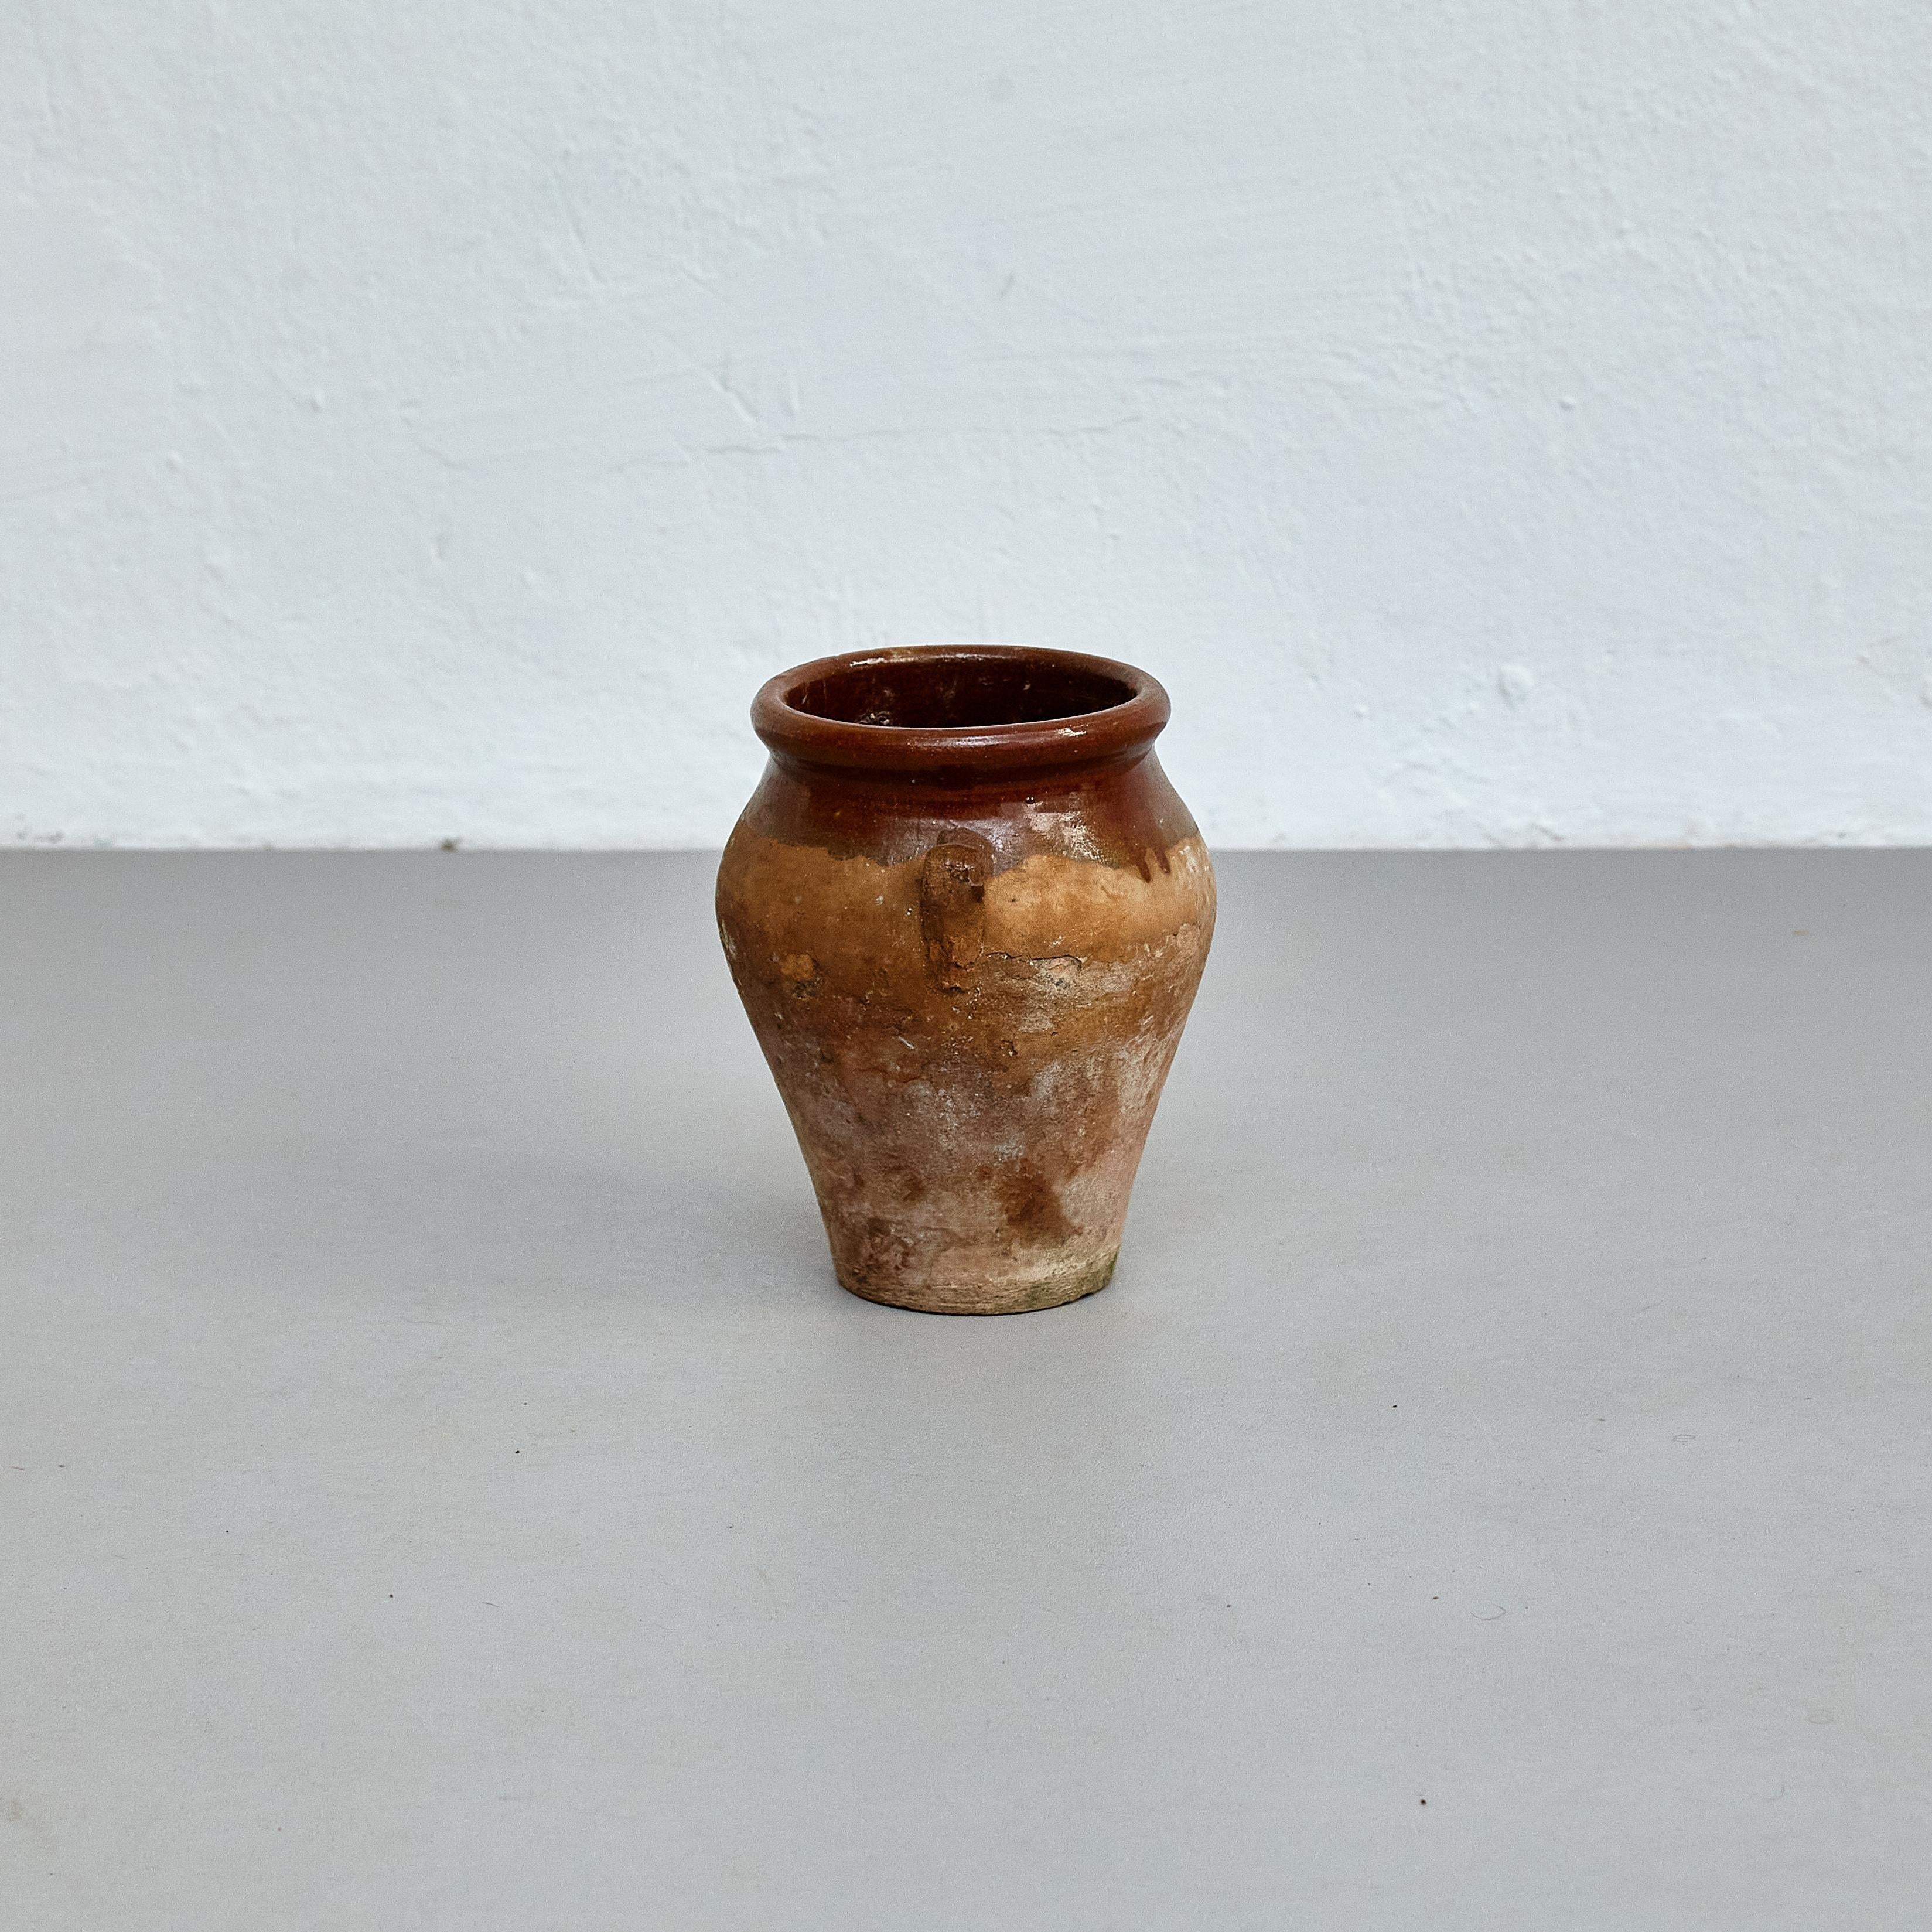 Vase en céramique traditionnelle espagnole du début du 20e siècle.

Fabriqué en Espagne, début du 20e siècle.

En état d'origine avec une usure mineure conforme à l'âge et à l'utilisation, préservant une belle patine.

Matériaux :